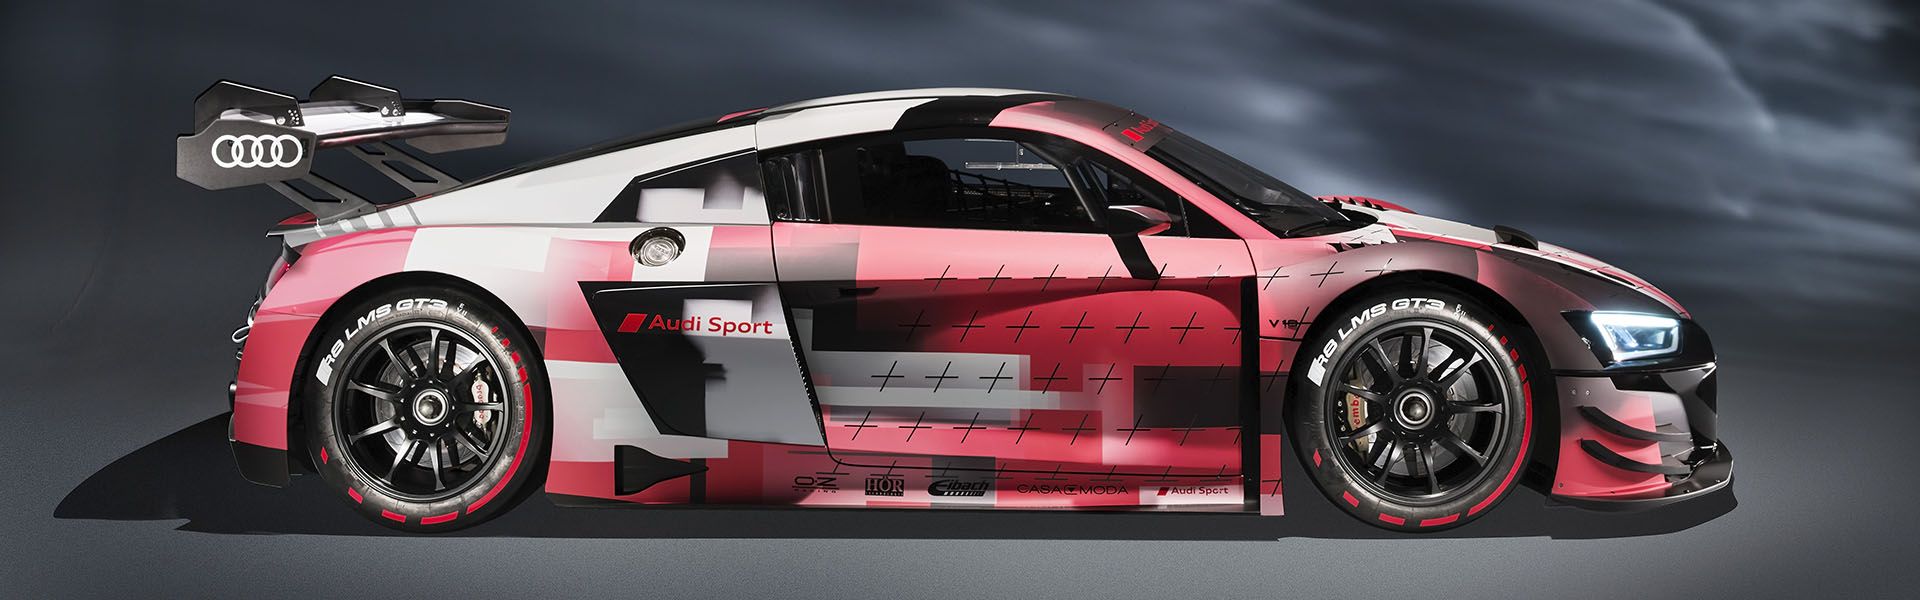 Audi R8 LMS  